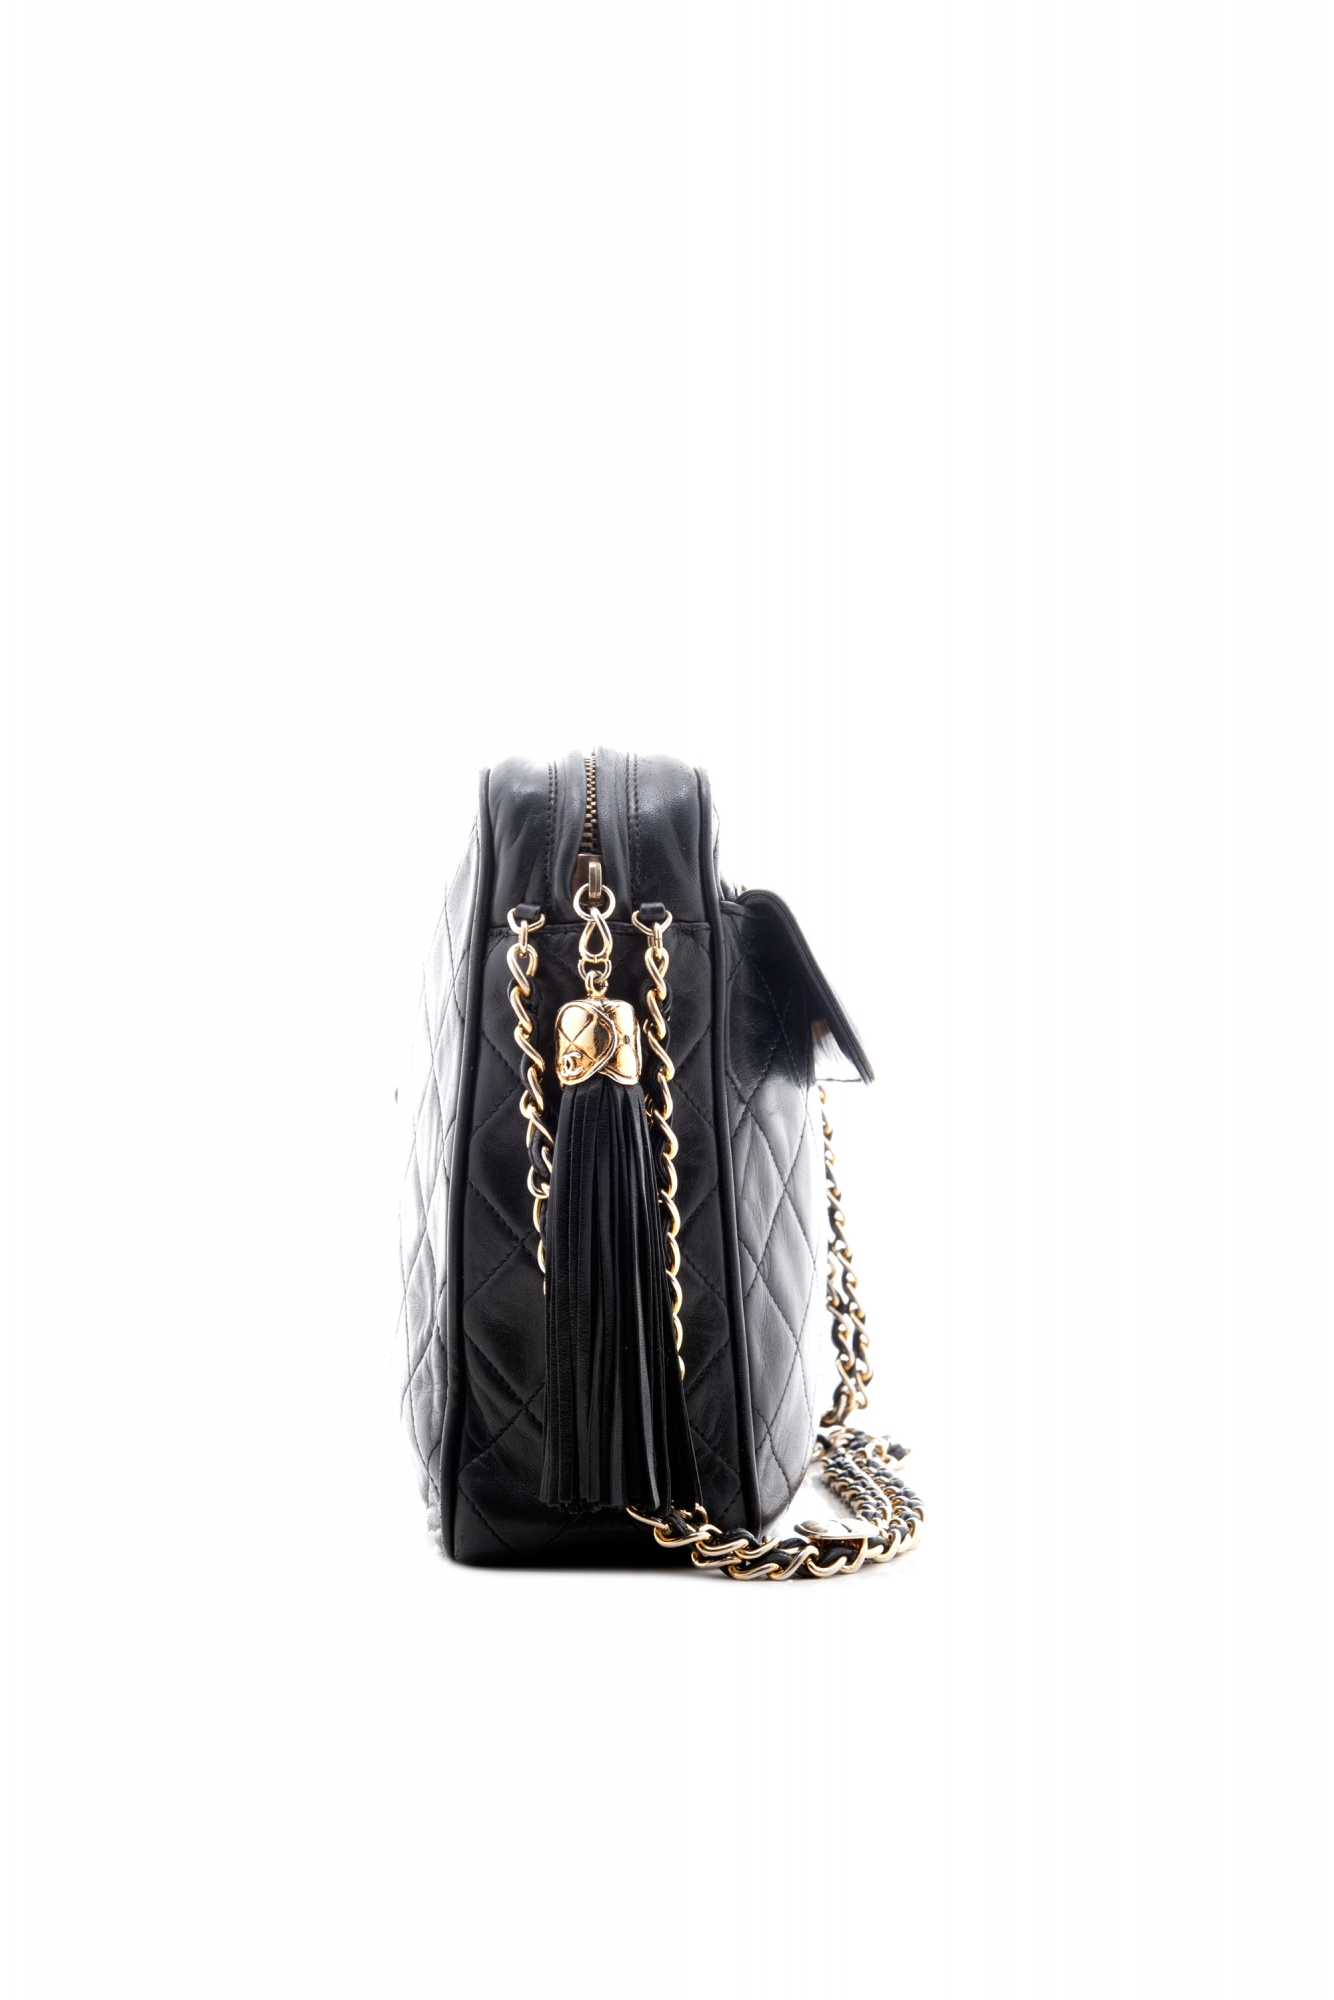 Chanel Vintage Black Quilted Camera Tassel Bag - Chanel | ArtListings